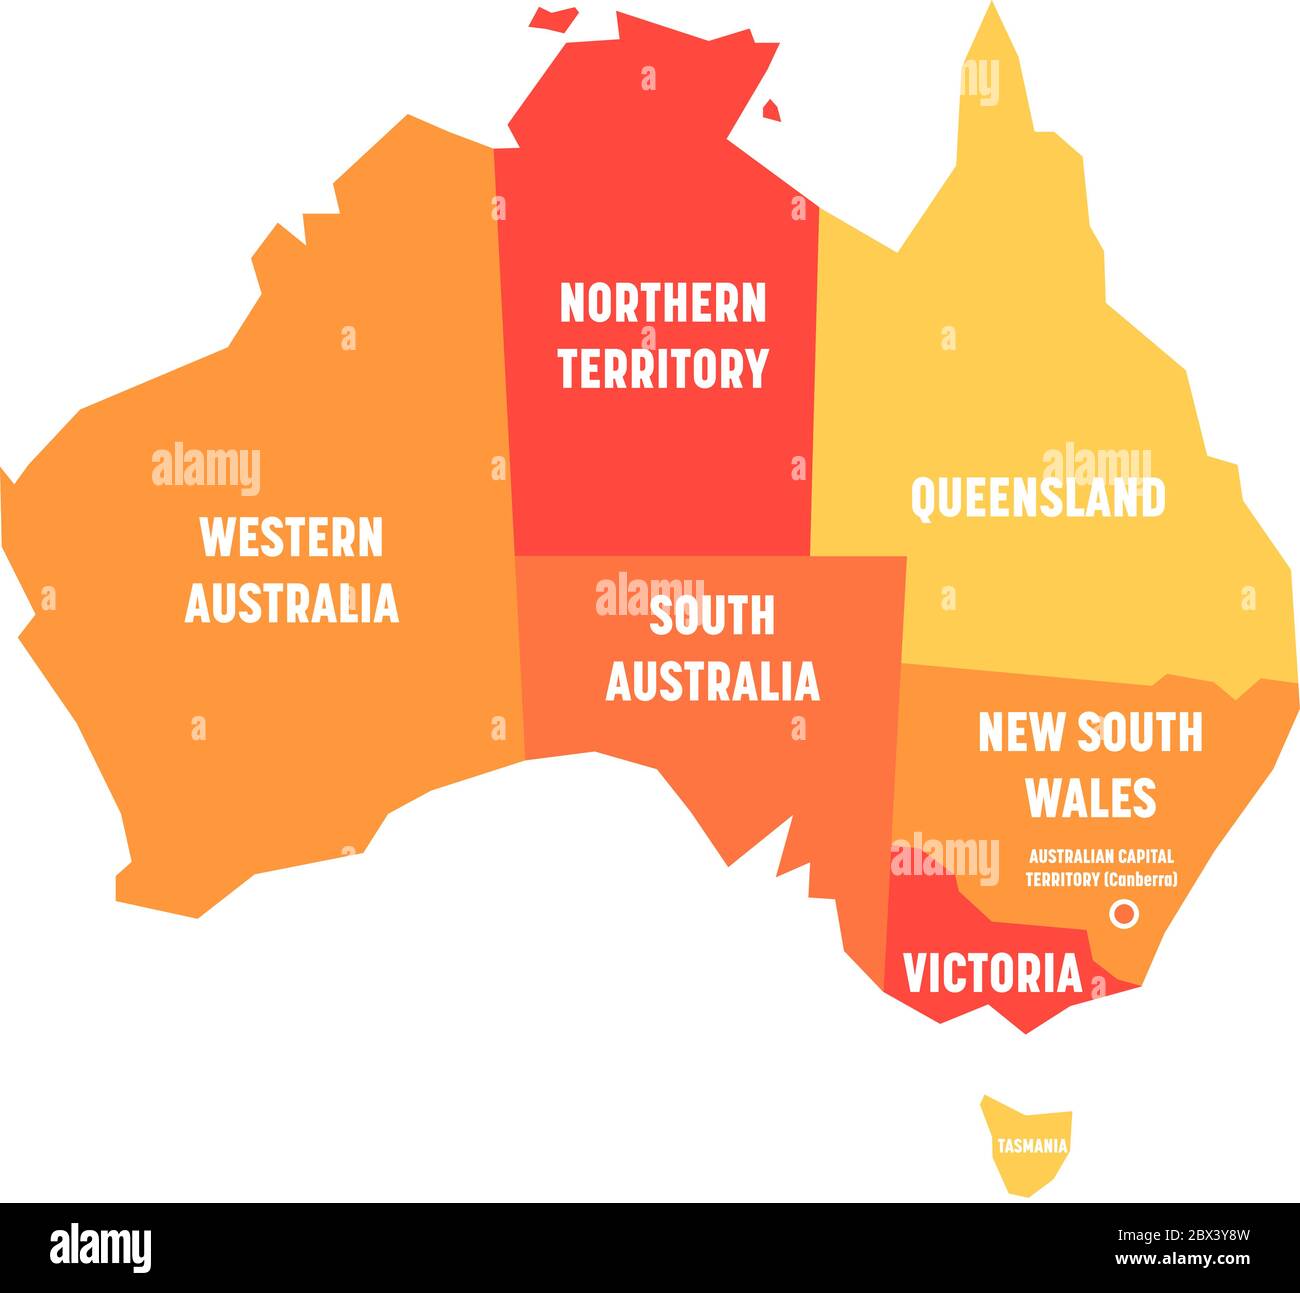 Mappa semplificata dell'Australia divisa in stati e territori. Mappa piatta arancione con etichette bianche. Illustrazione vettoriale. Illustrazione Vettoriale